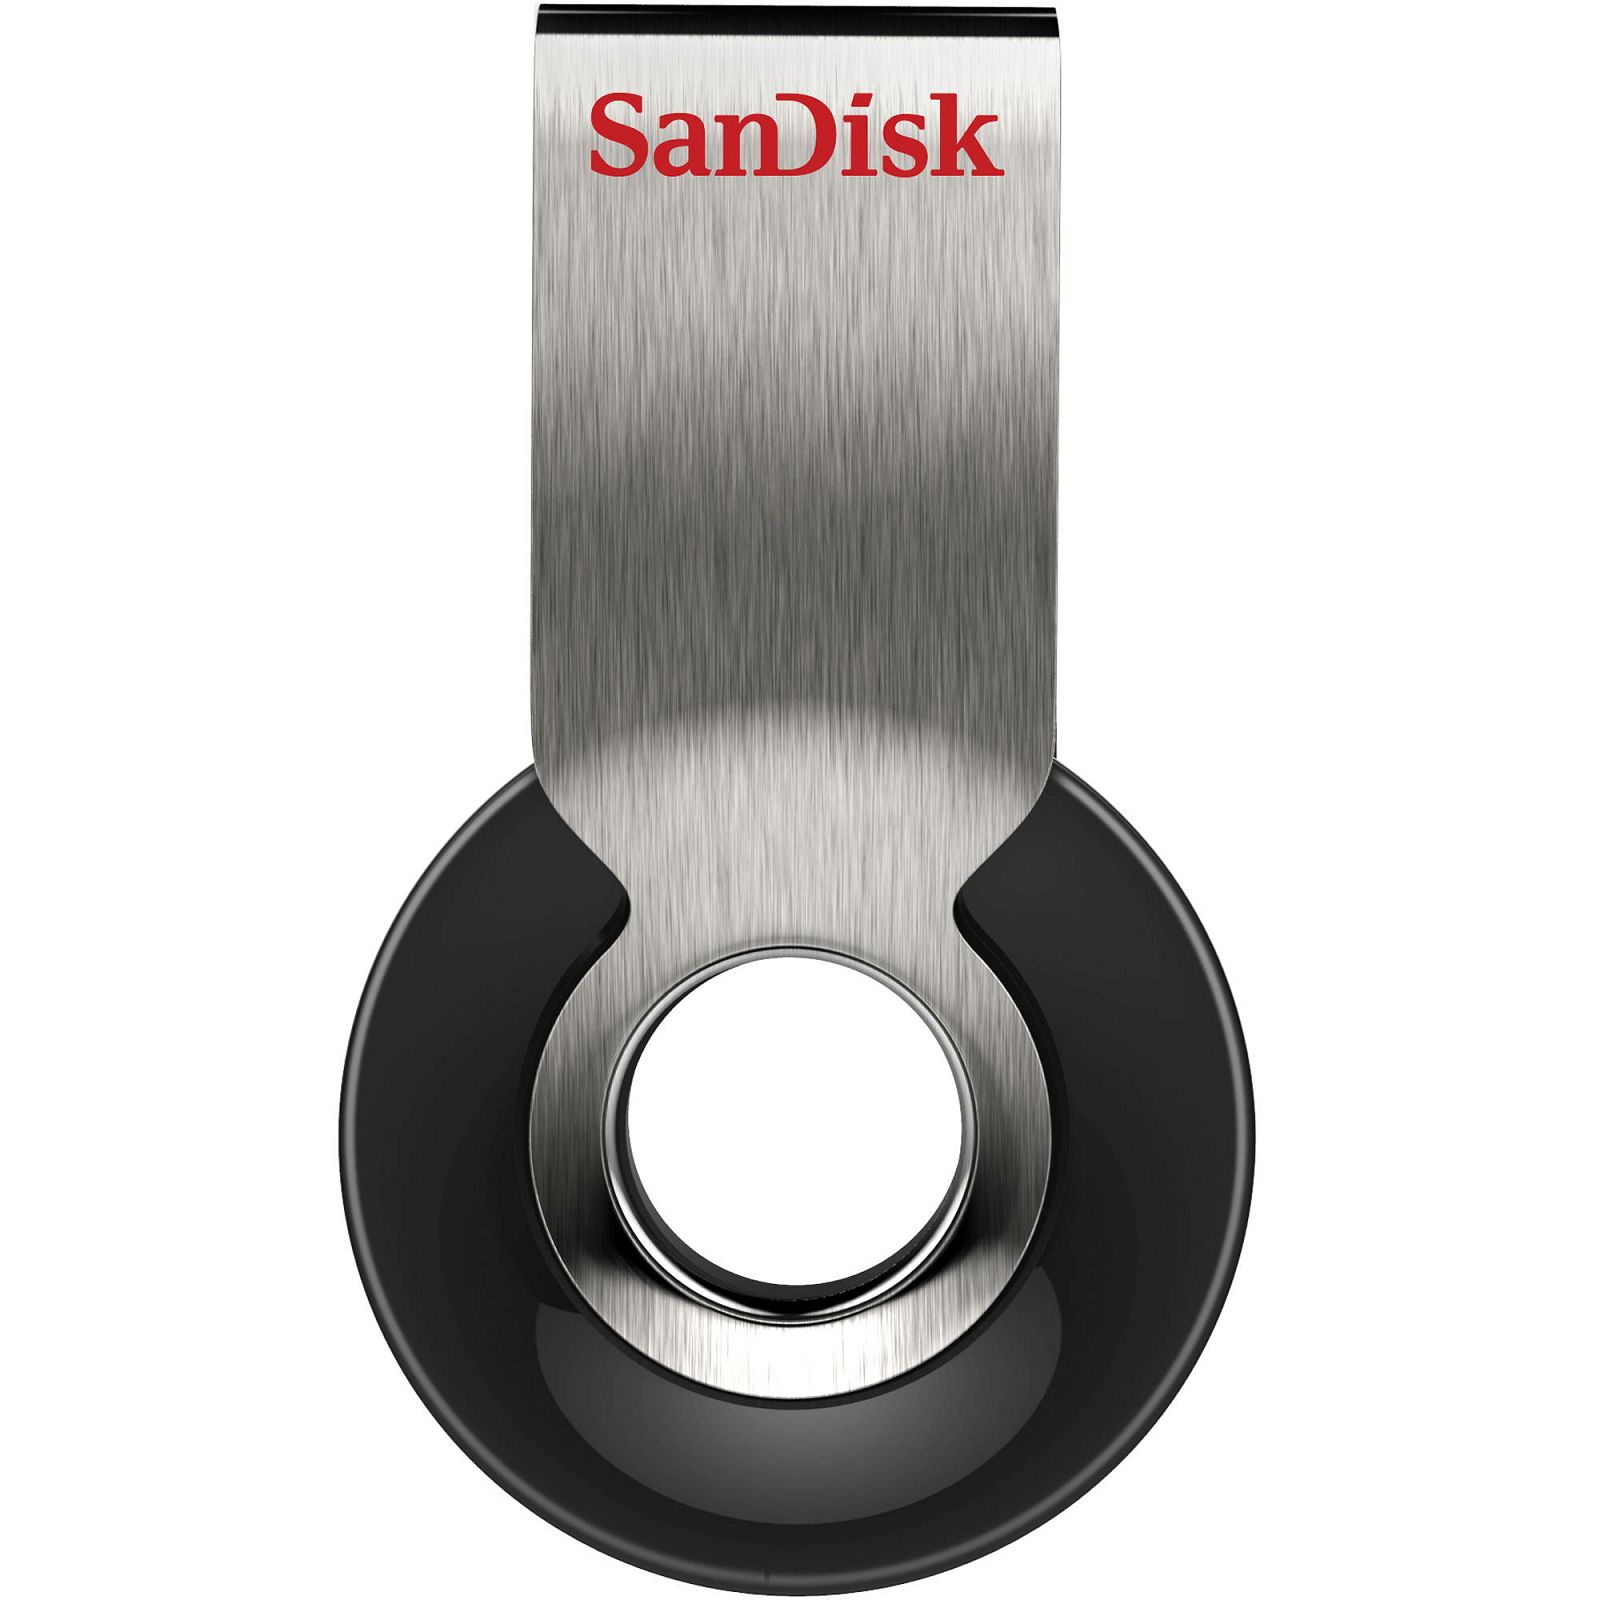 SanDisk Cruzer Orbit 8GB SDCZ58-008G-B35 USB Memory Stick